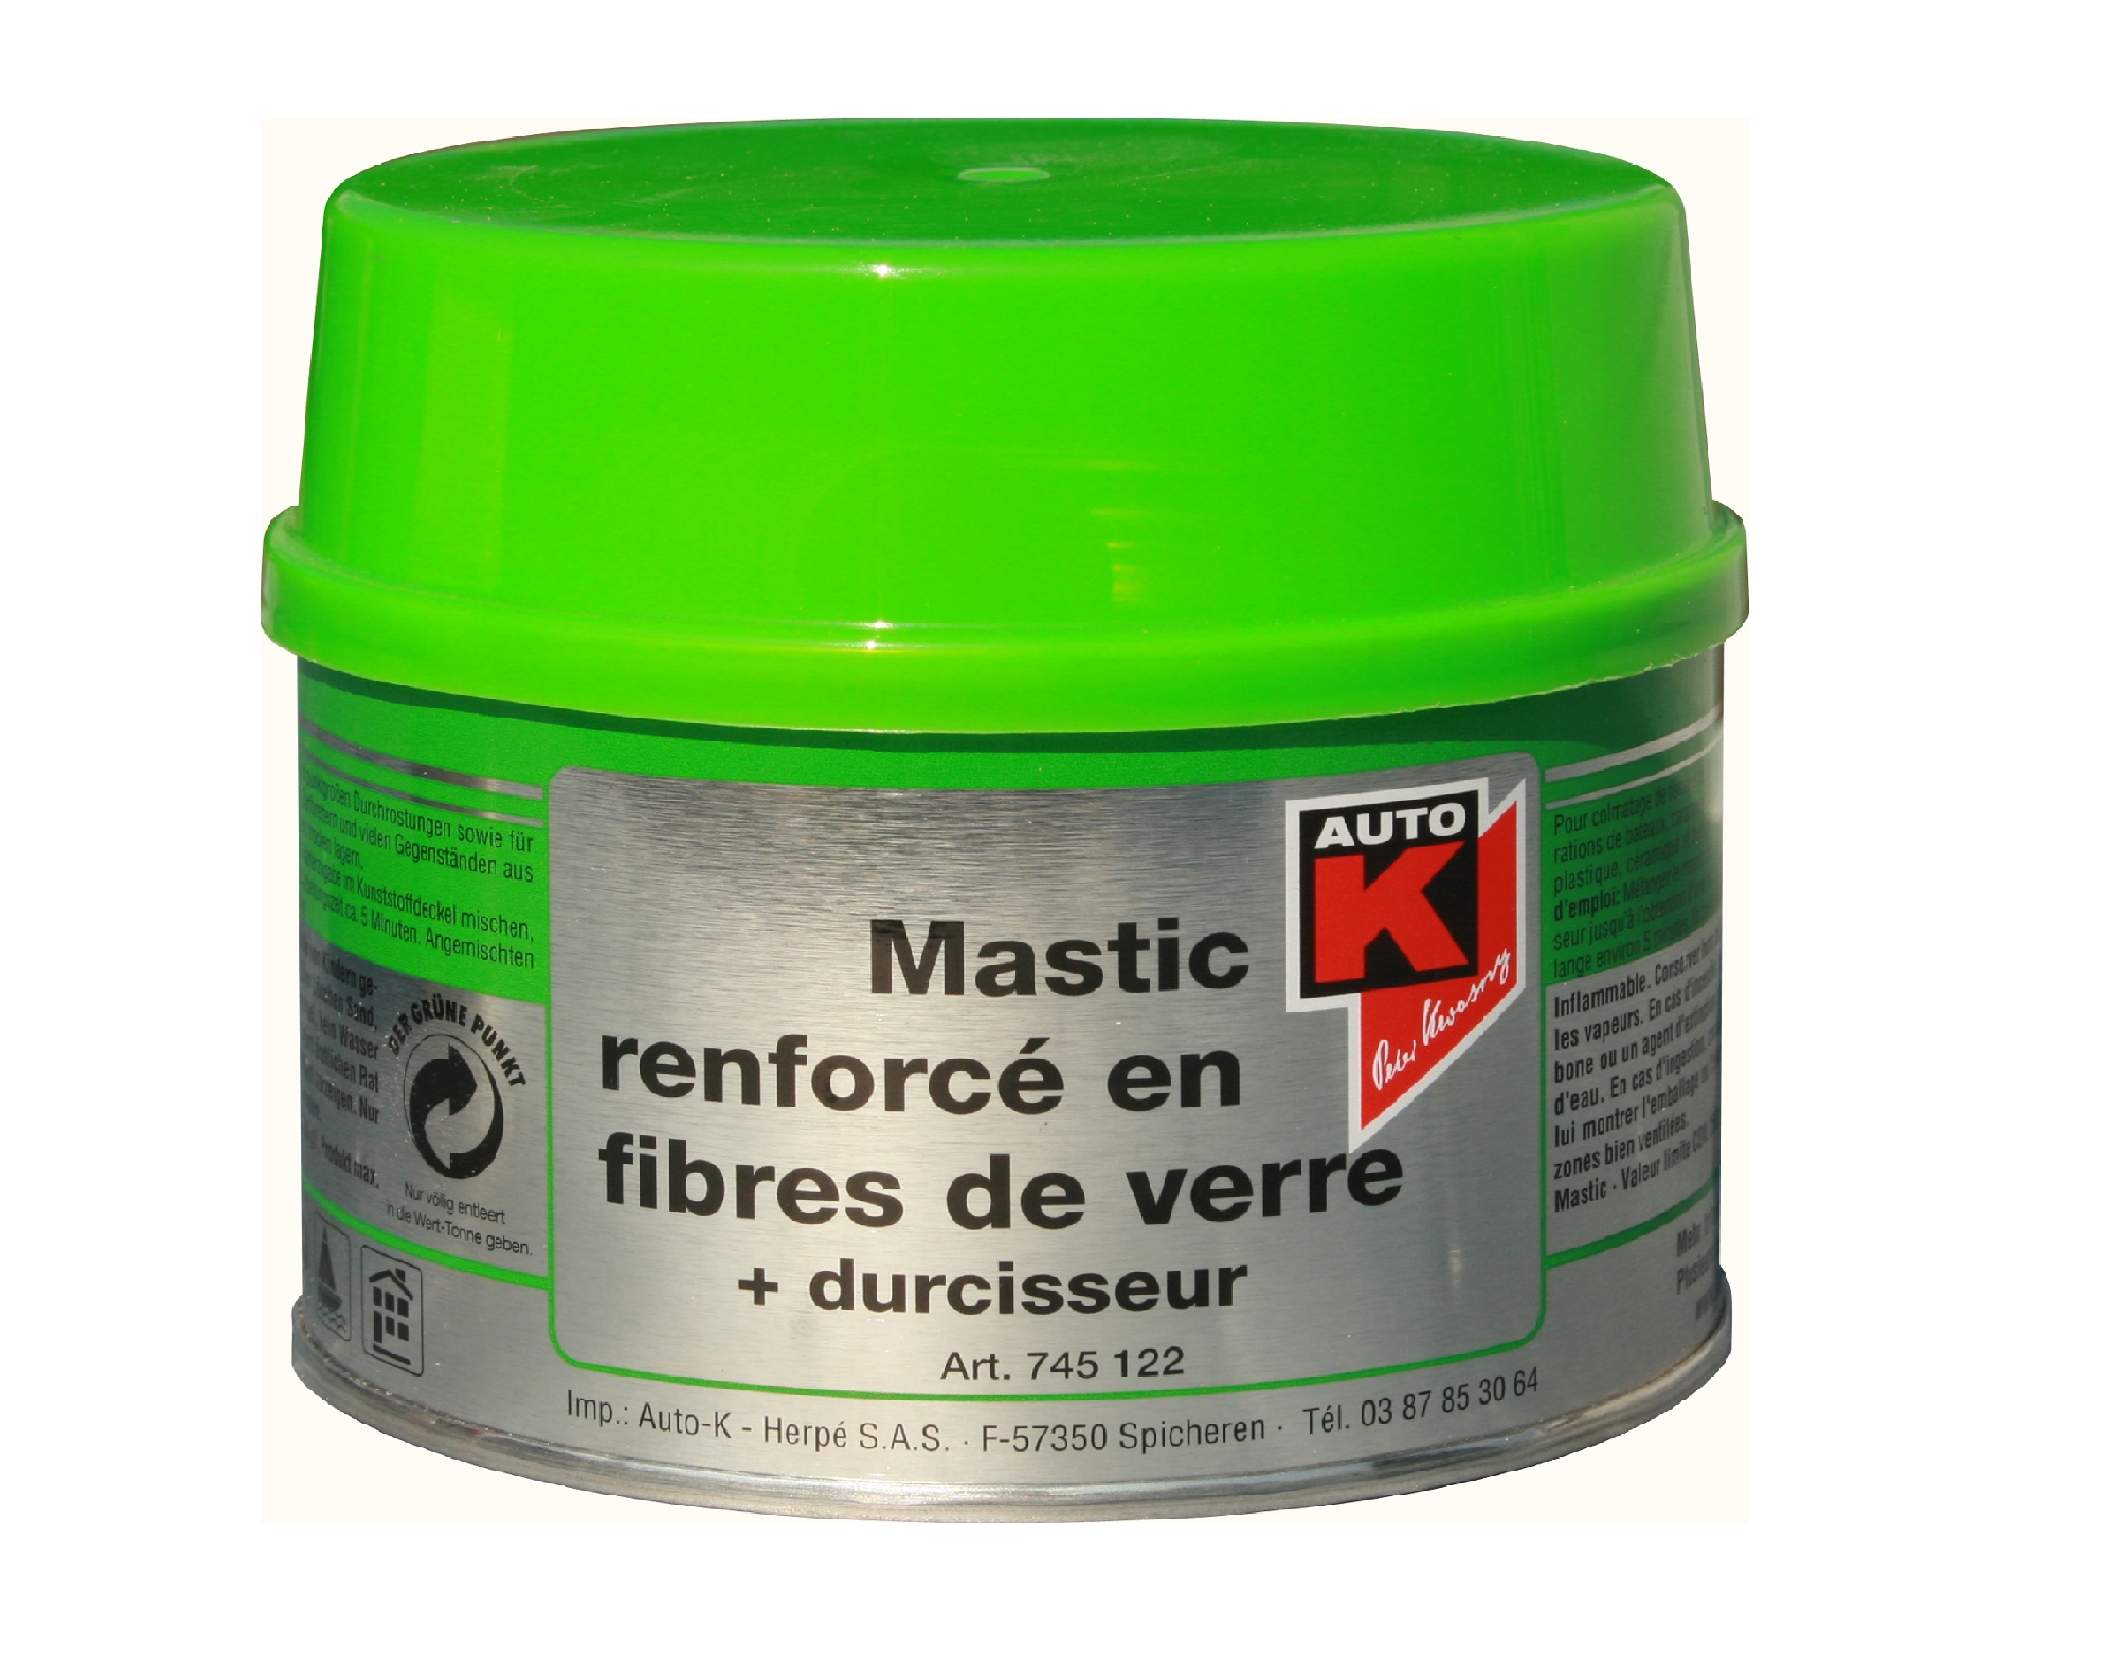 MASTIC RENFORCÉ FIBRES VERRE + Durcisseur 500g - AUTO-K 745122